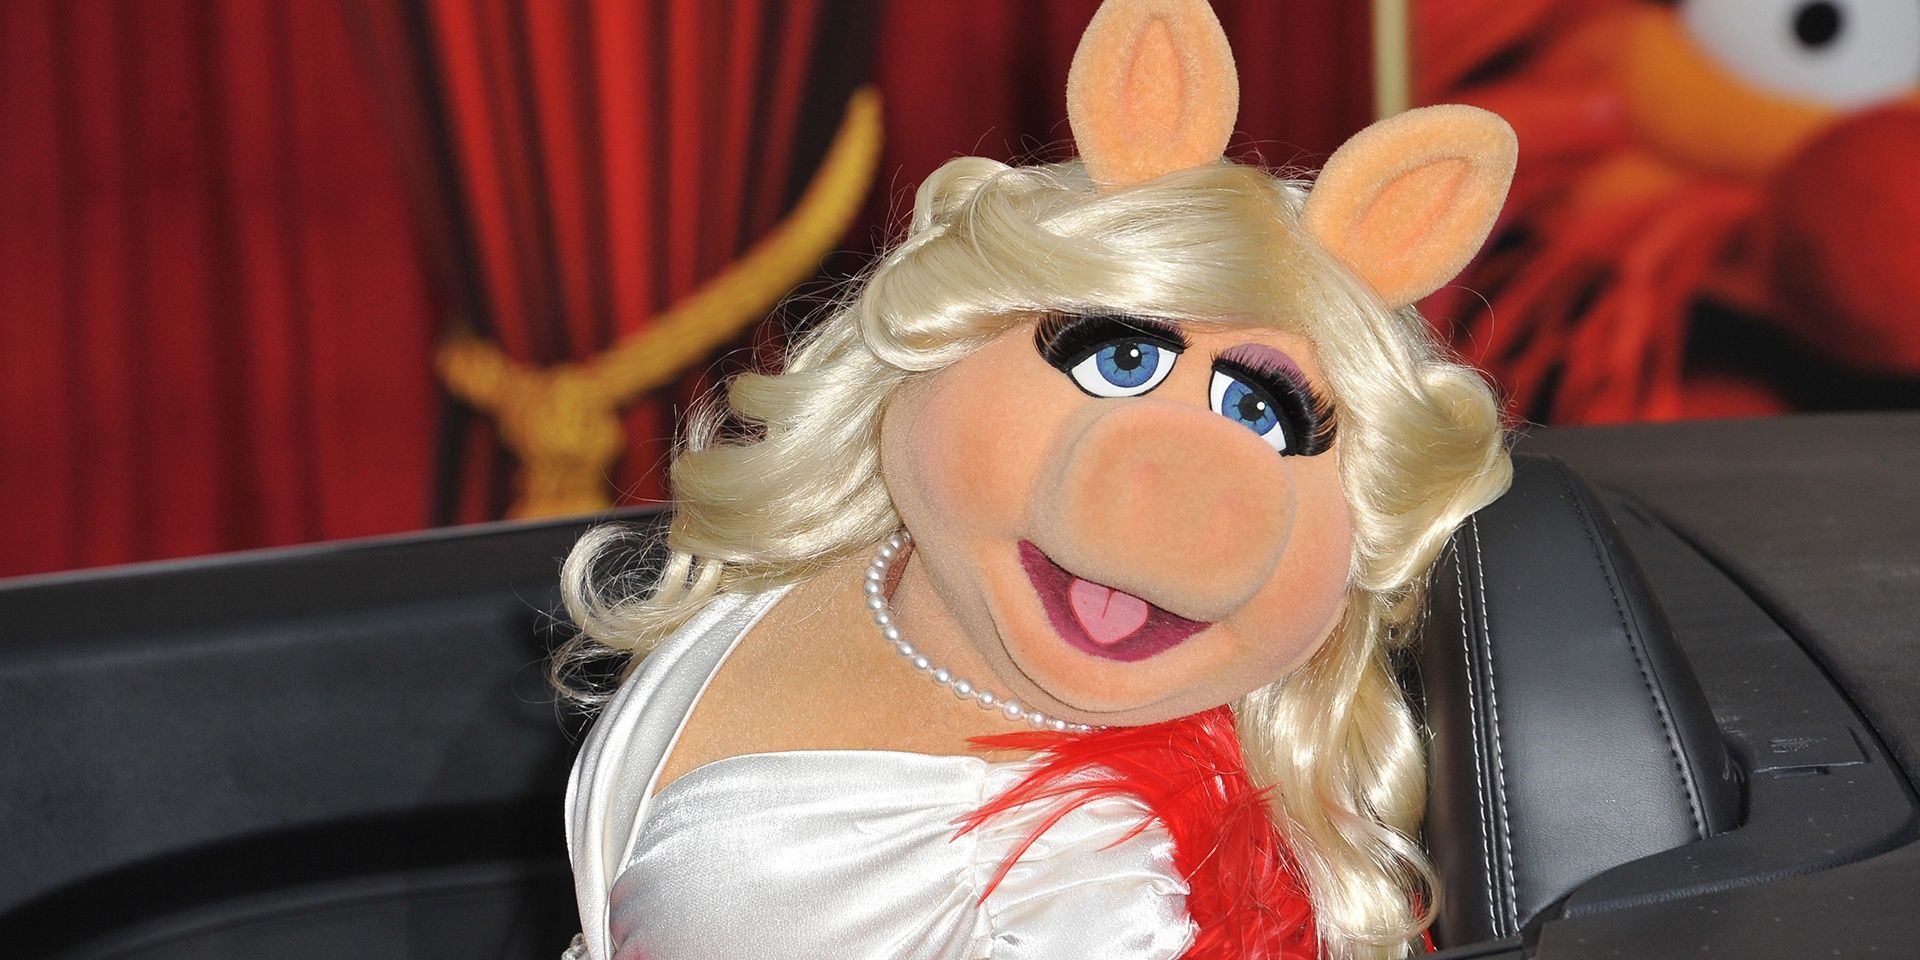 The Muppets' Miss Piggy